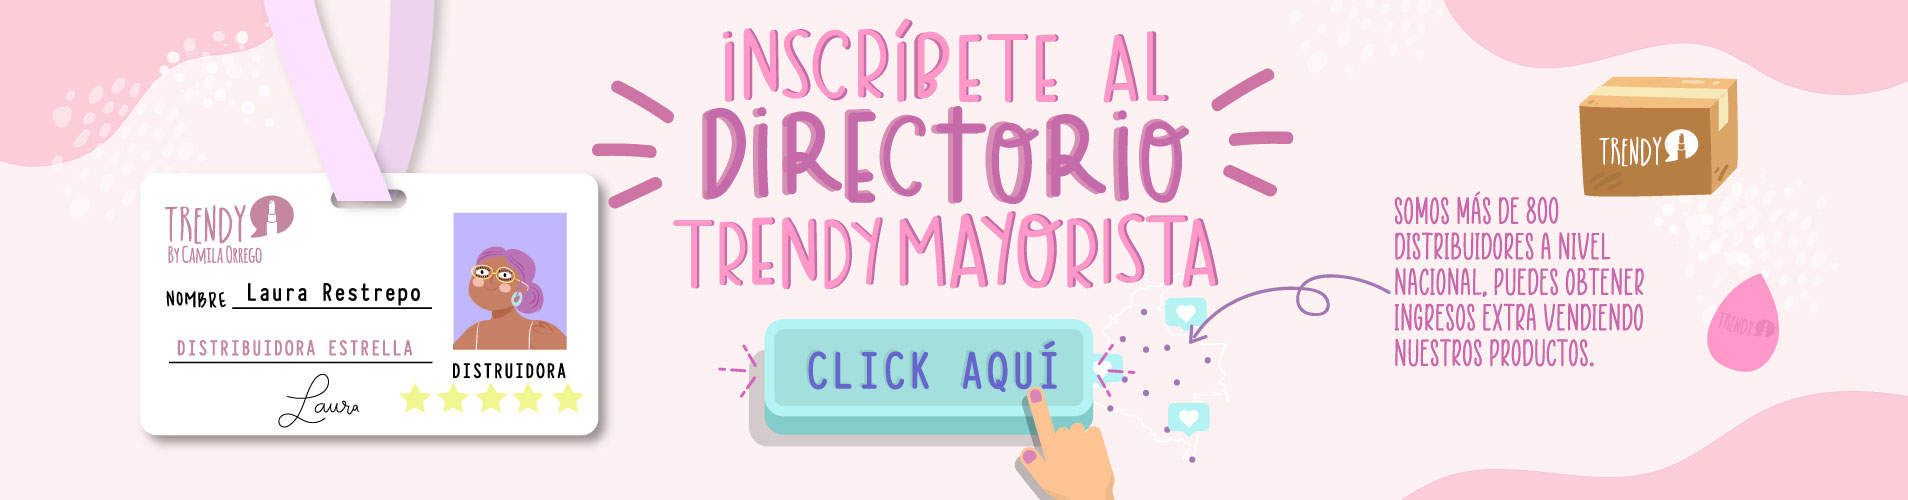 trendy-mayorista-directorioinscribete